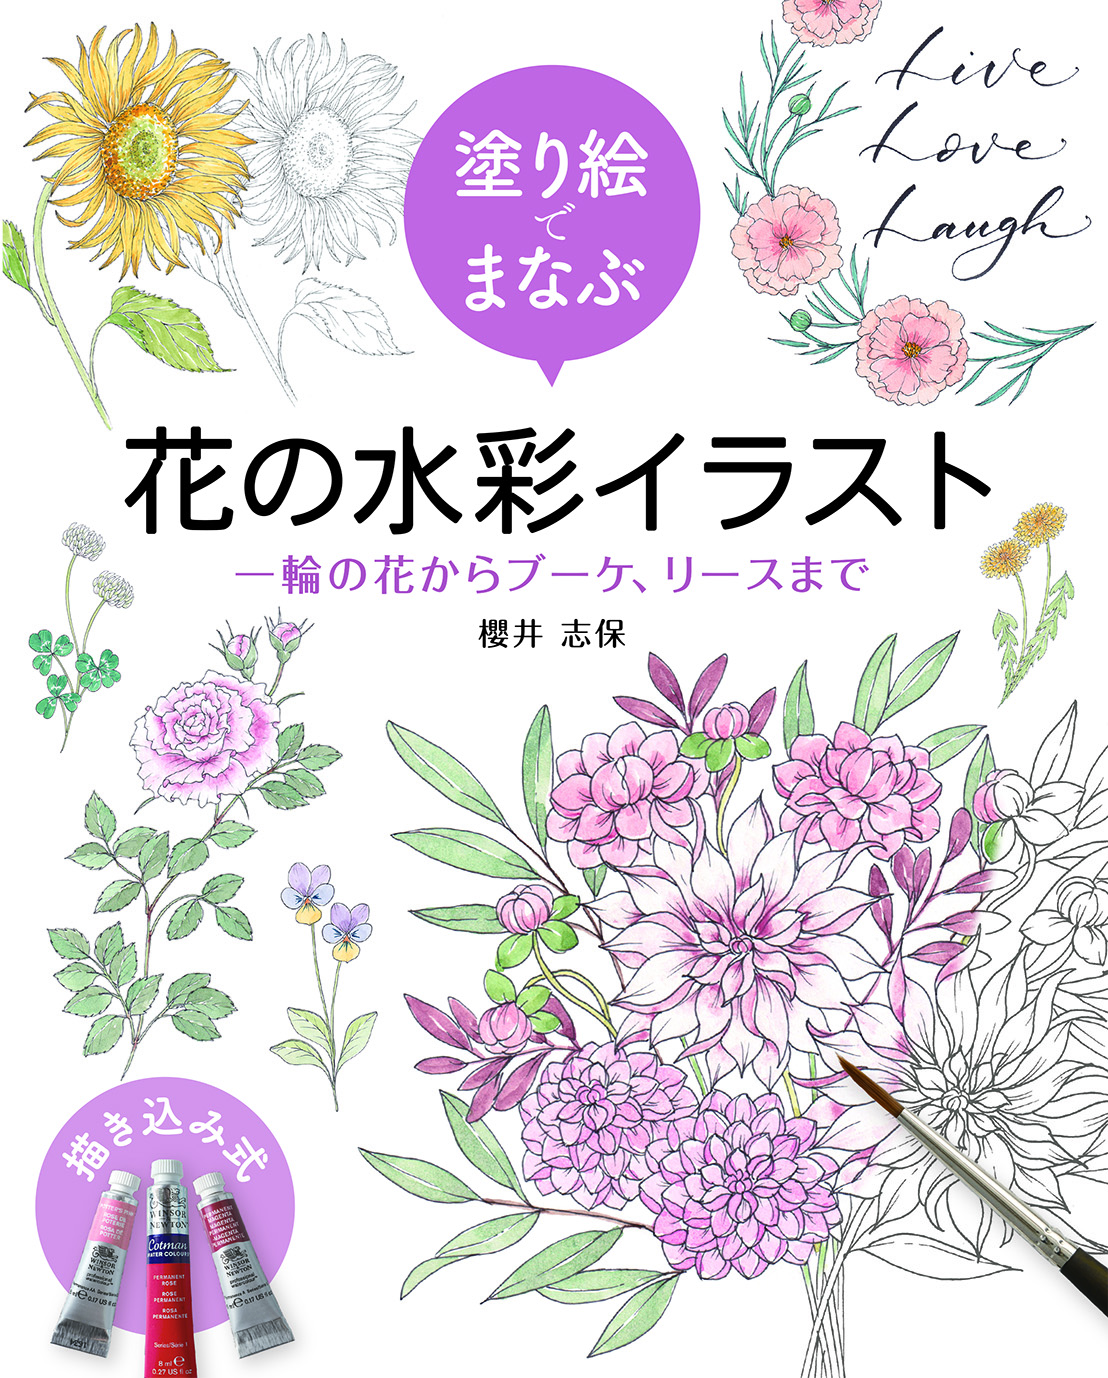 【3月発売】塗り絵でまなぶ 花の水彩イラスト  一輪の花からブーケ、リースまで